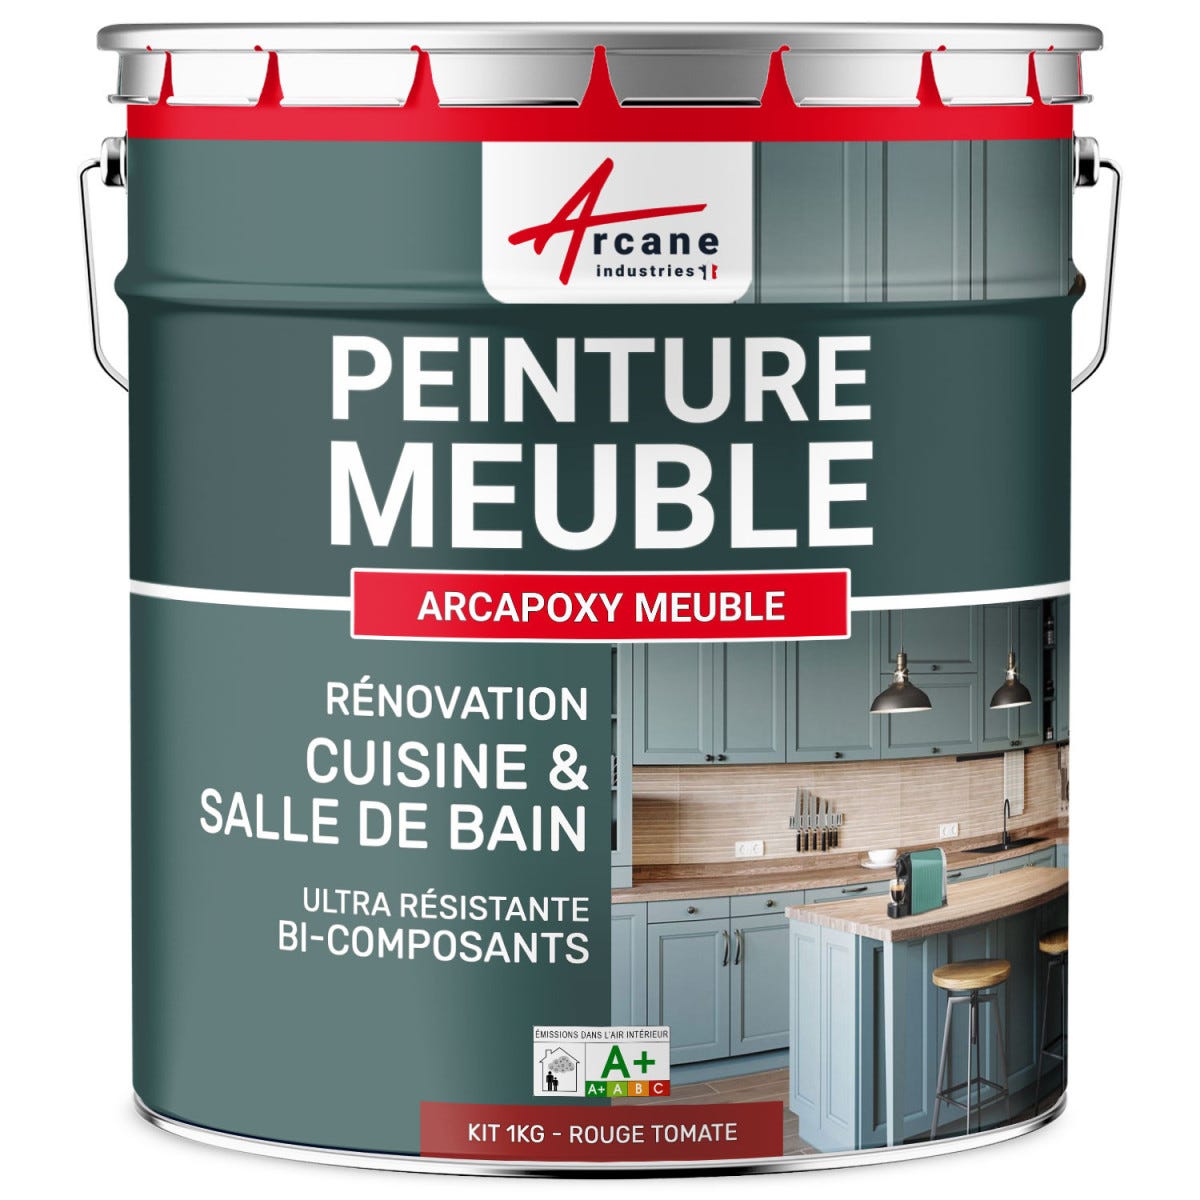 Peinture Meuble Cuisine, Salle de Bain - ARCAPOXY MEUBLE - 1 kg (jusqu'à 12 m² en 2 couches) - Rouge Tomate - RAL 3013 - ARCANE INDUSTRIES 0